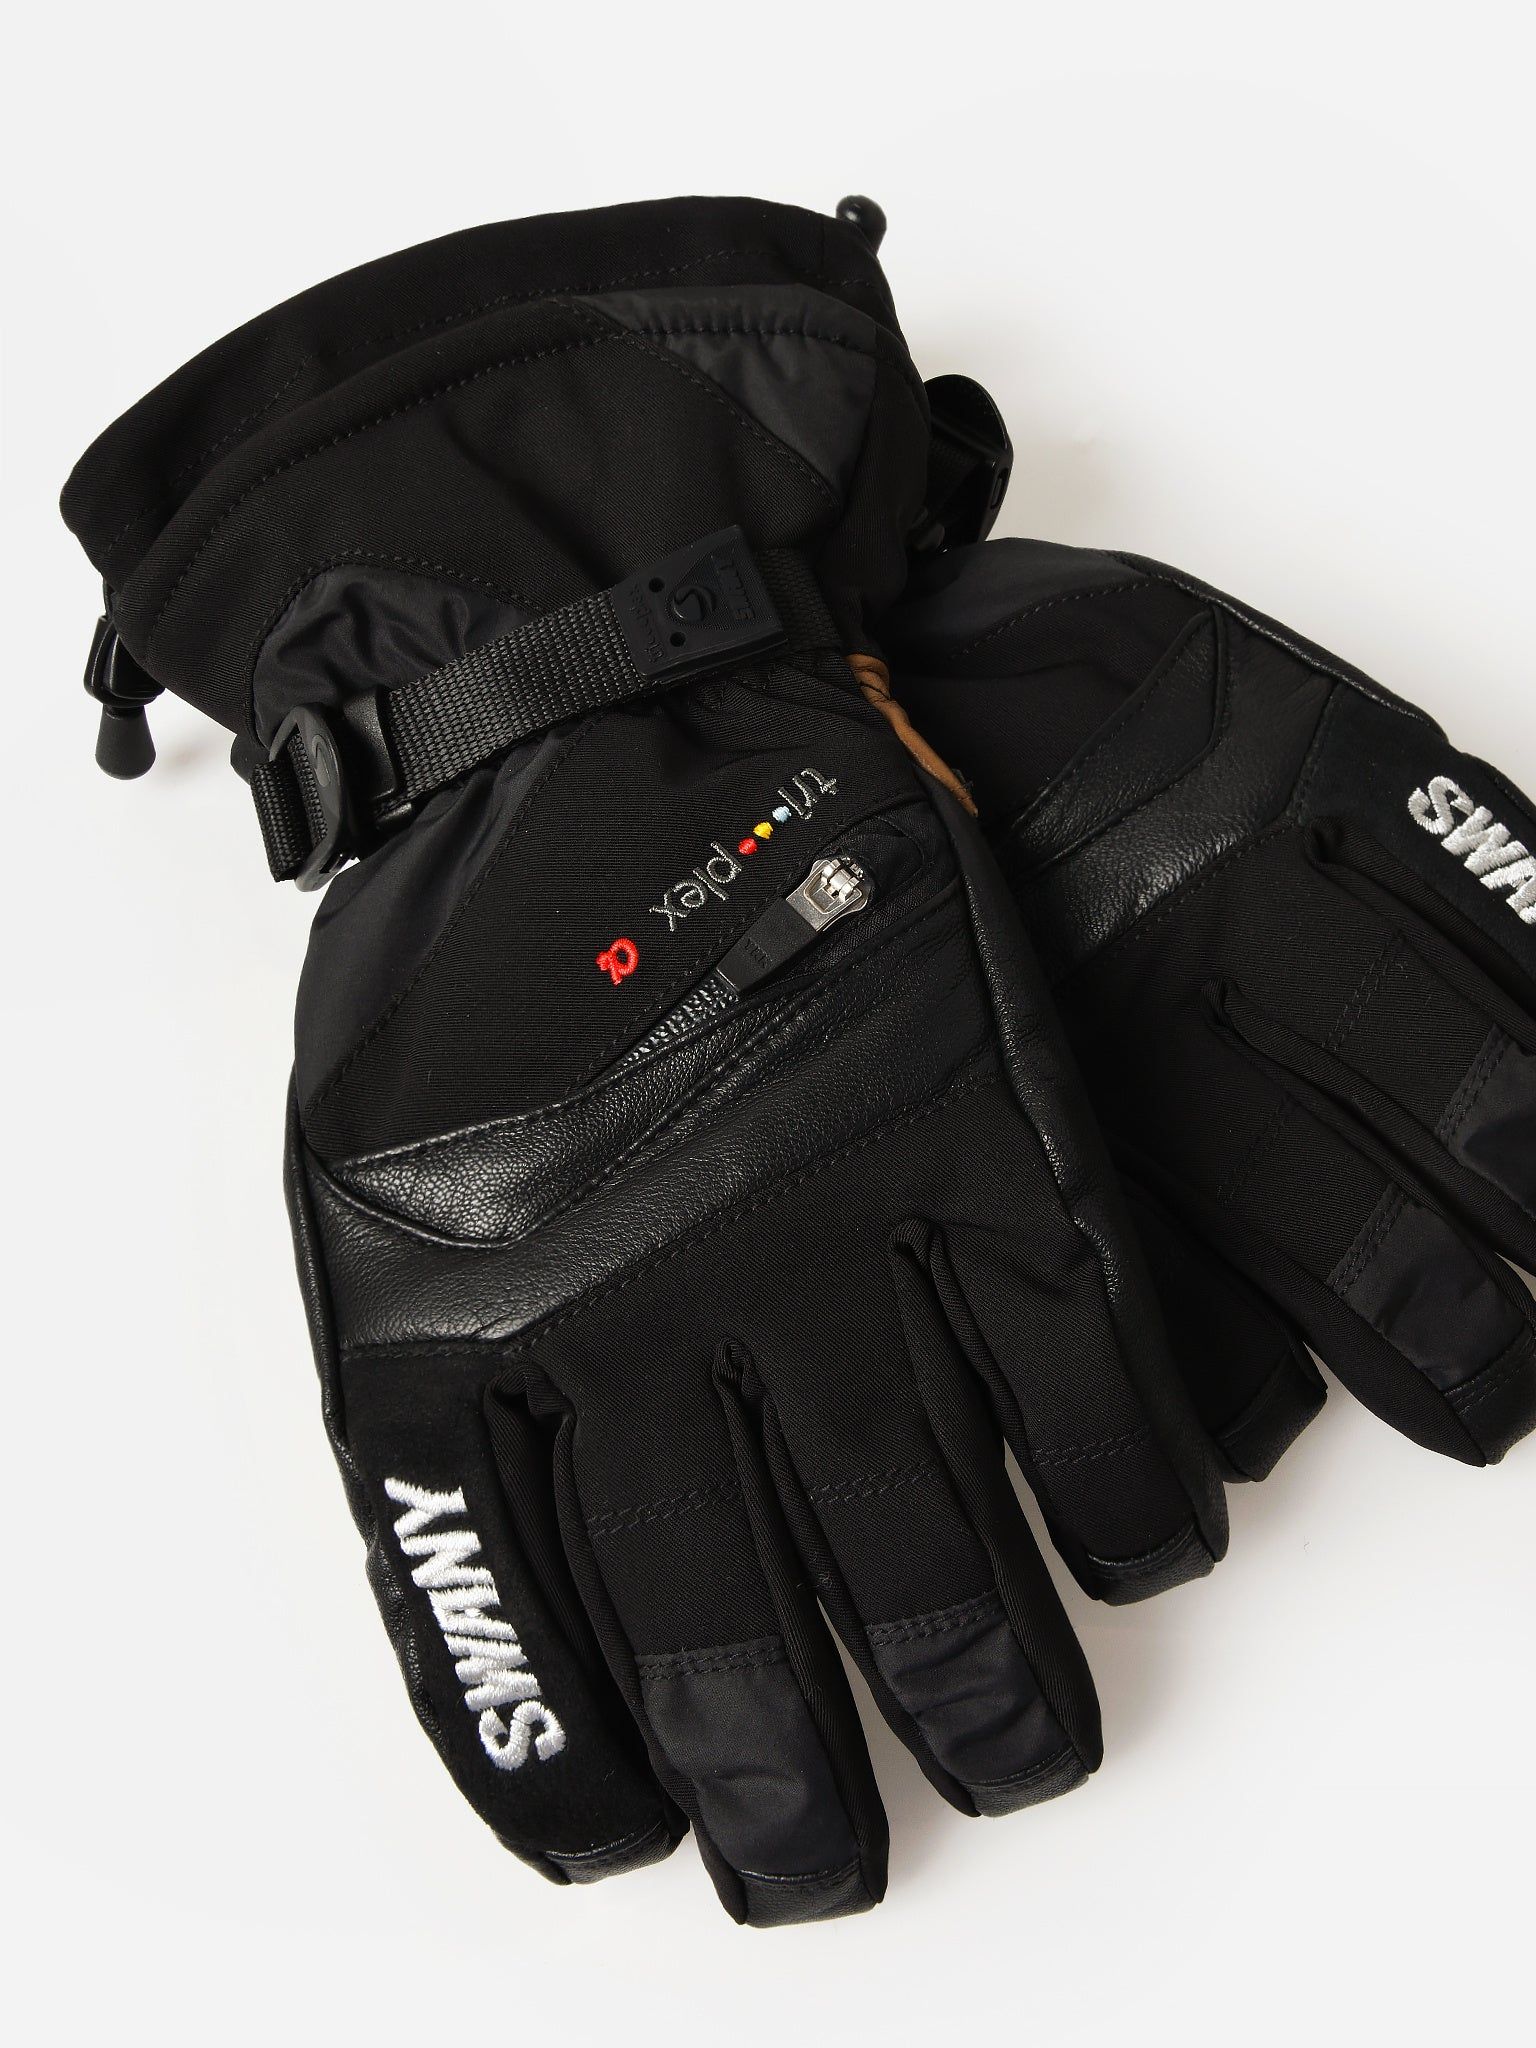 Swany X-Change 2.1 Glove | Saint Bernard